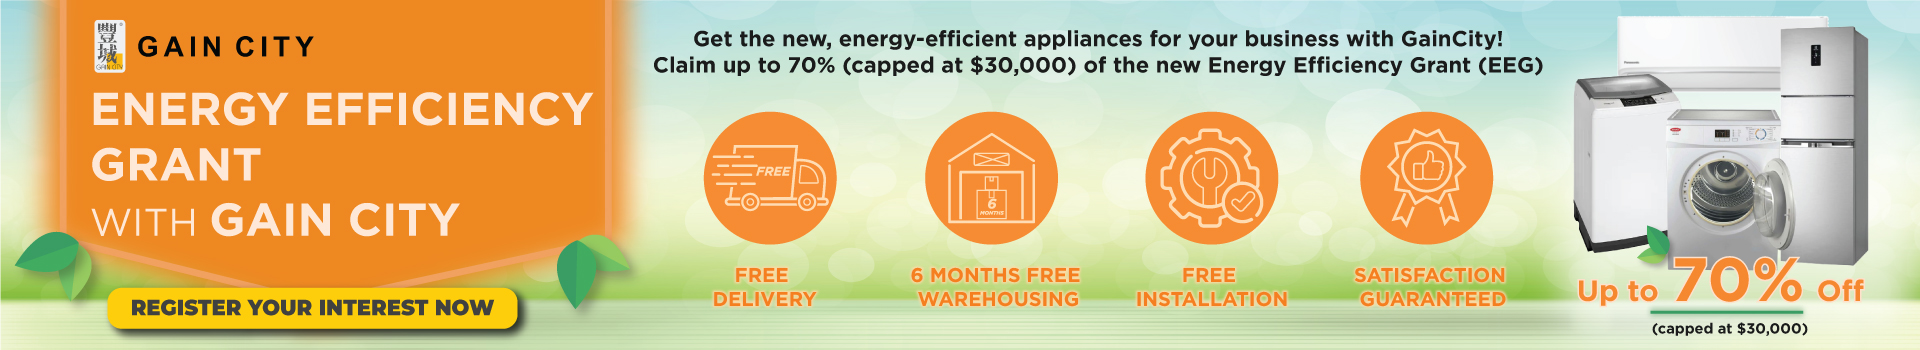 Energy efficiency grants